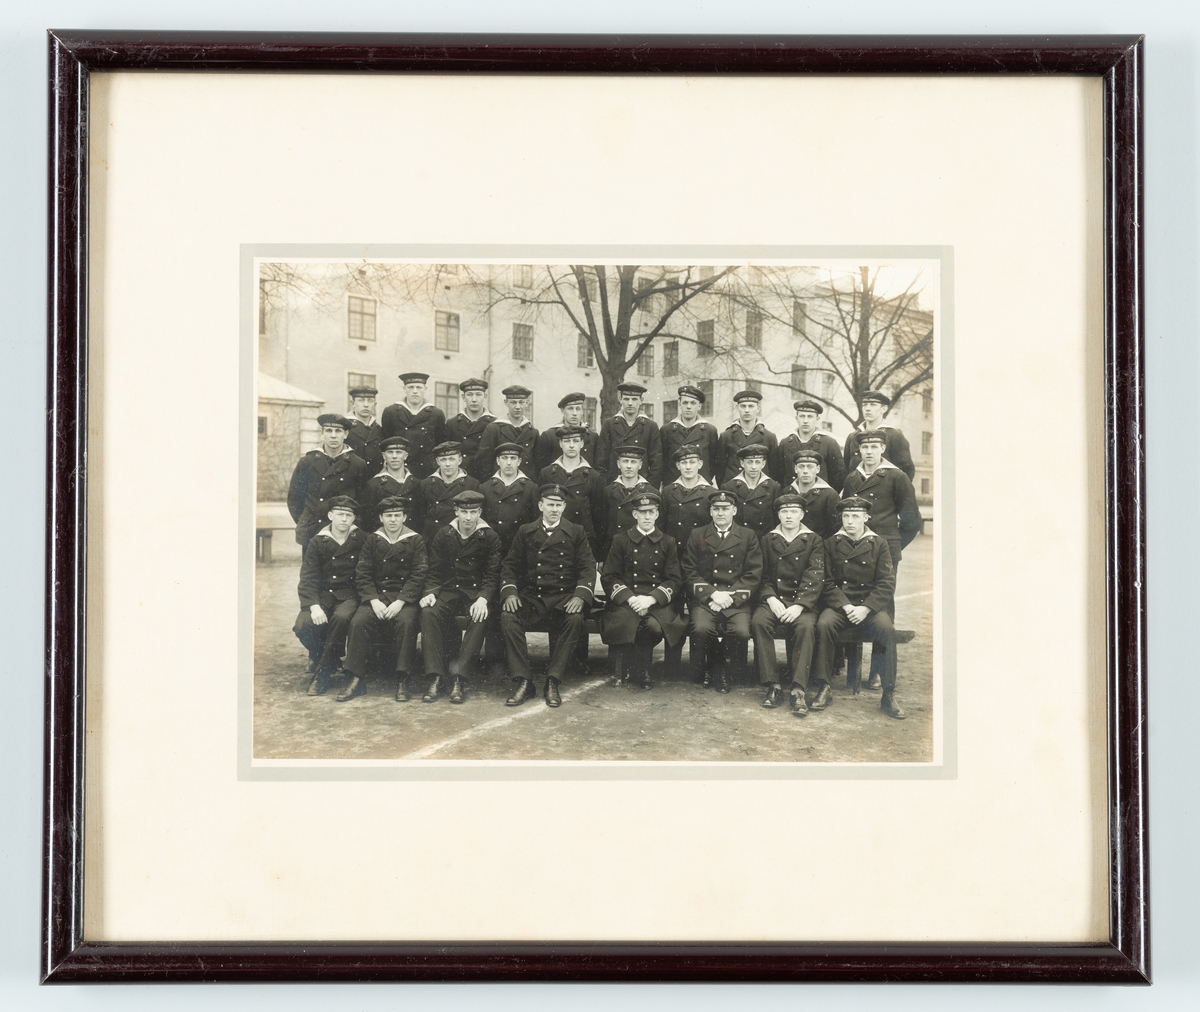 Bilden visar elever och sjöofficerare från maskinskolan på Bataljon Sparre i Karlskrona.